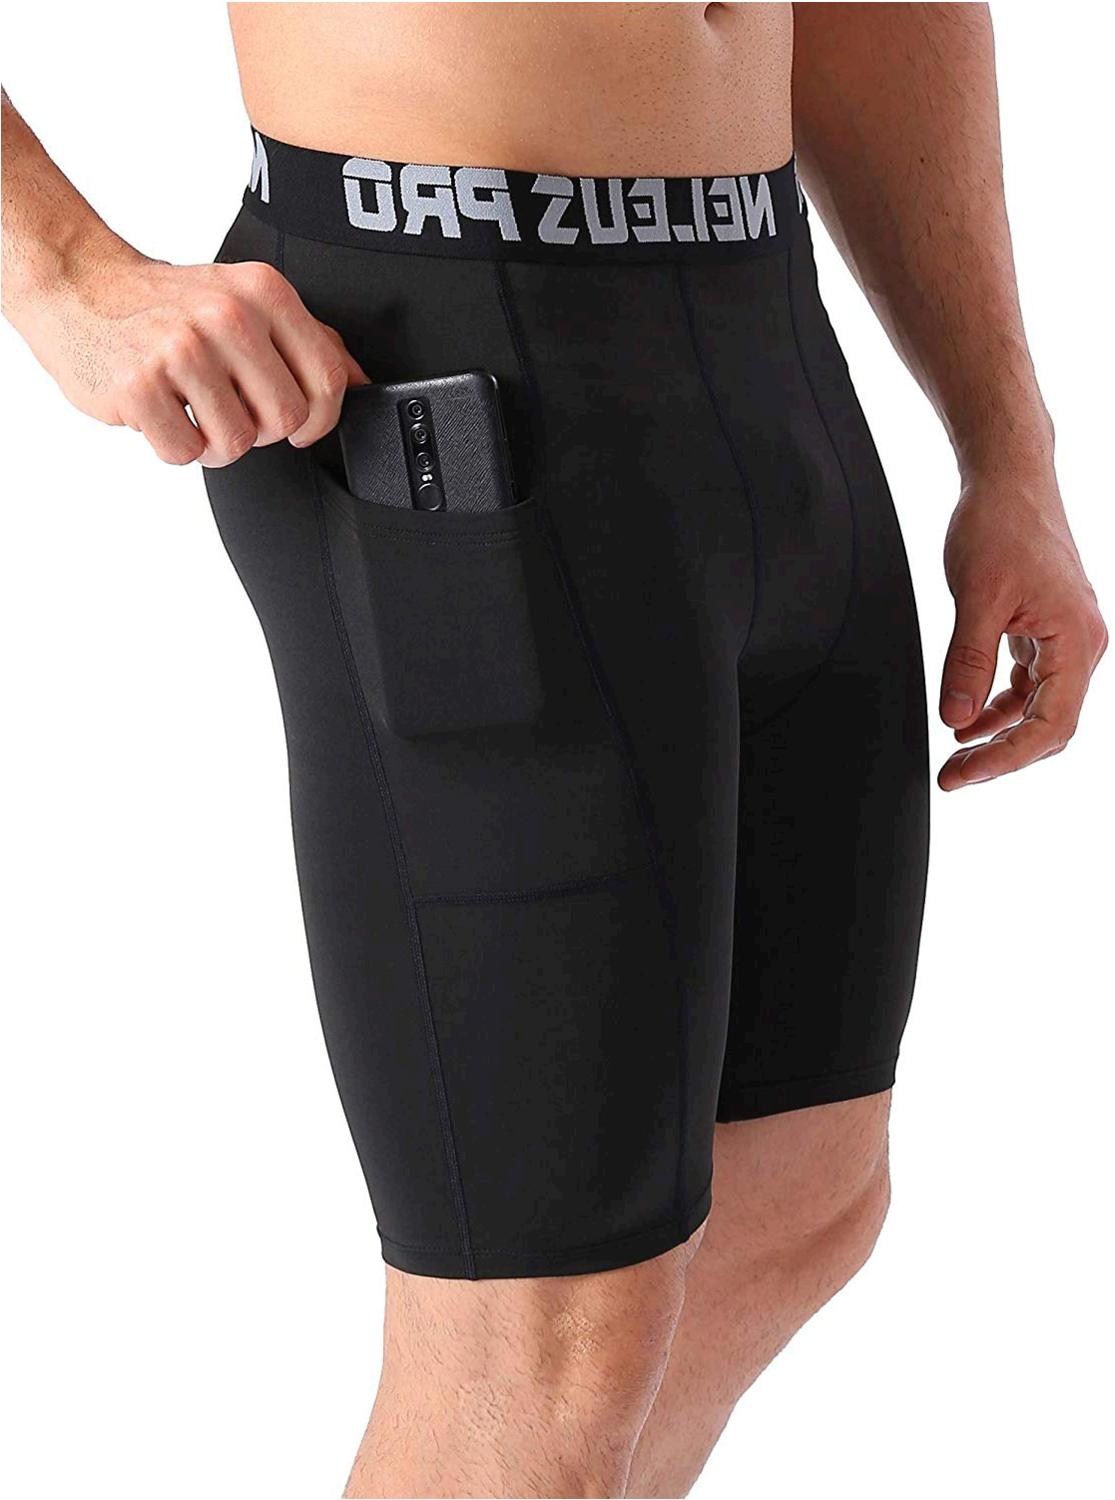 Neleus Men's 3 Pack Compression Shorts with, Black, Size Large JzsK | eBay